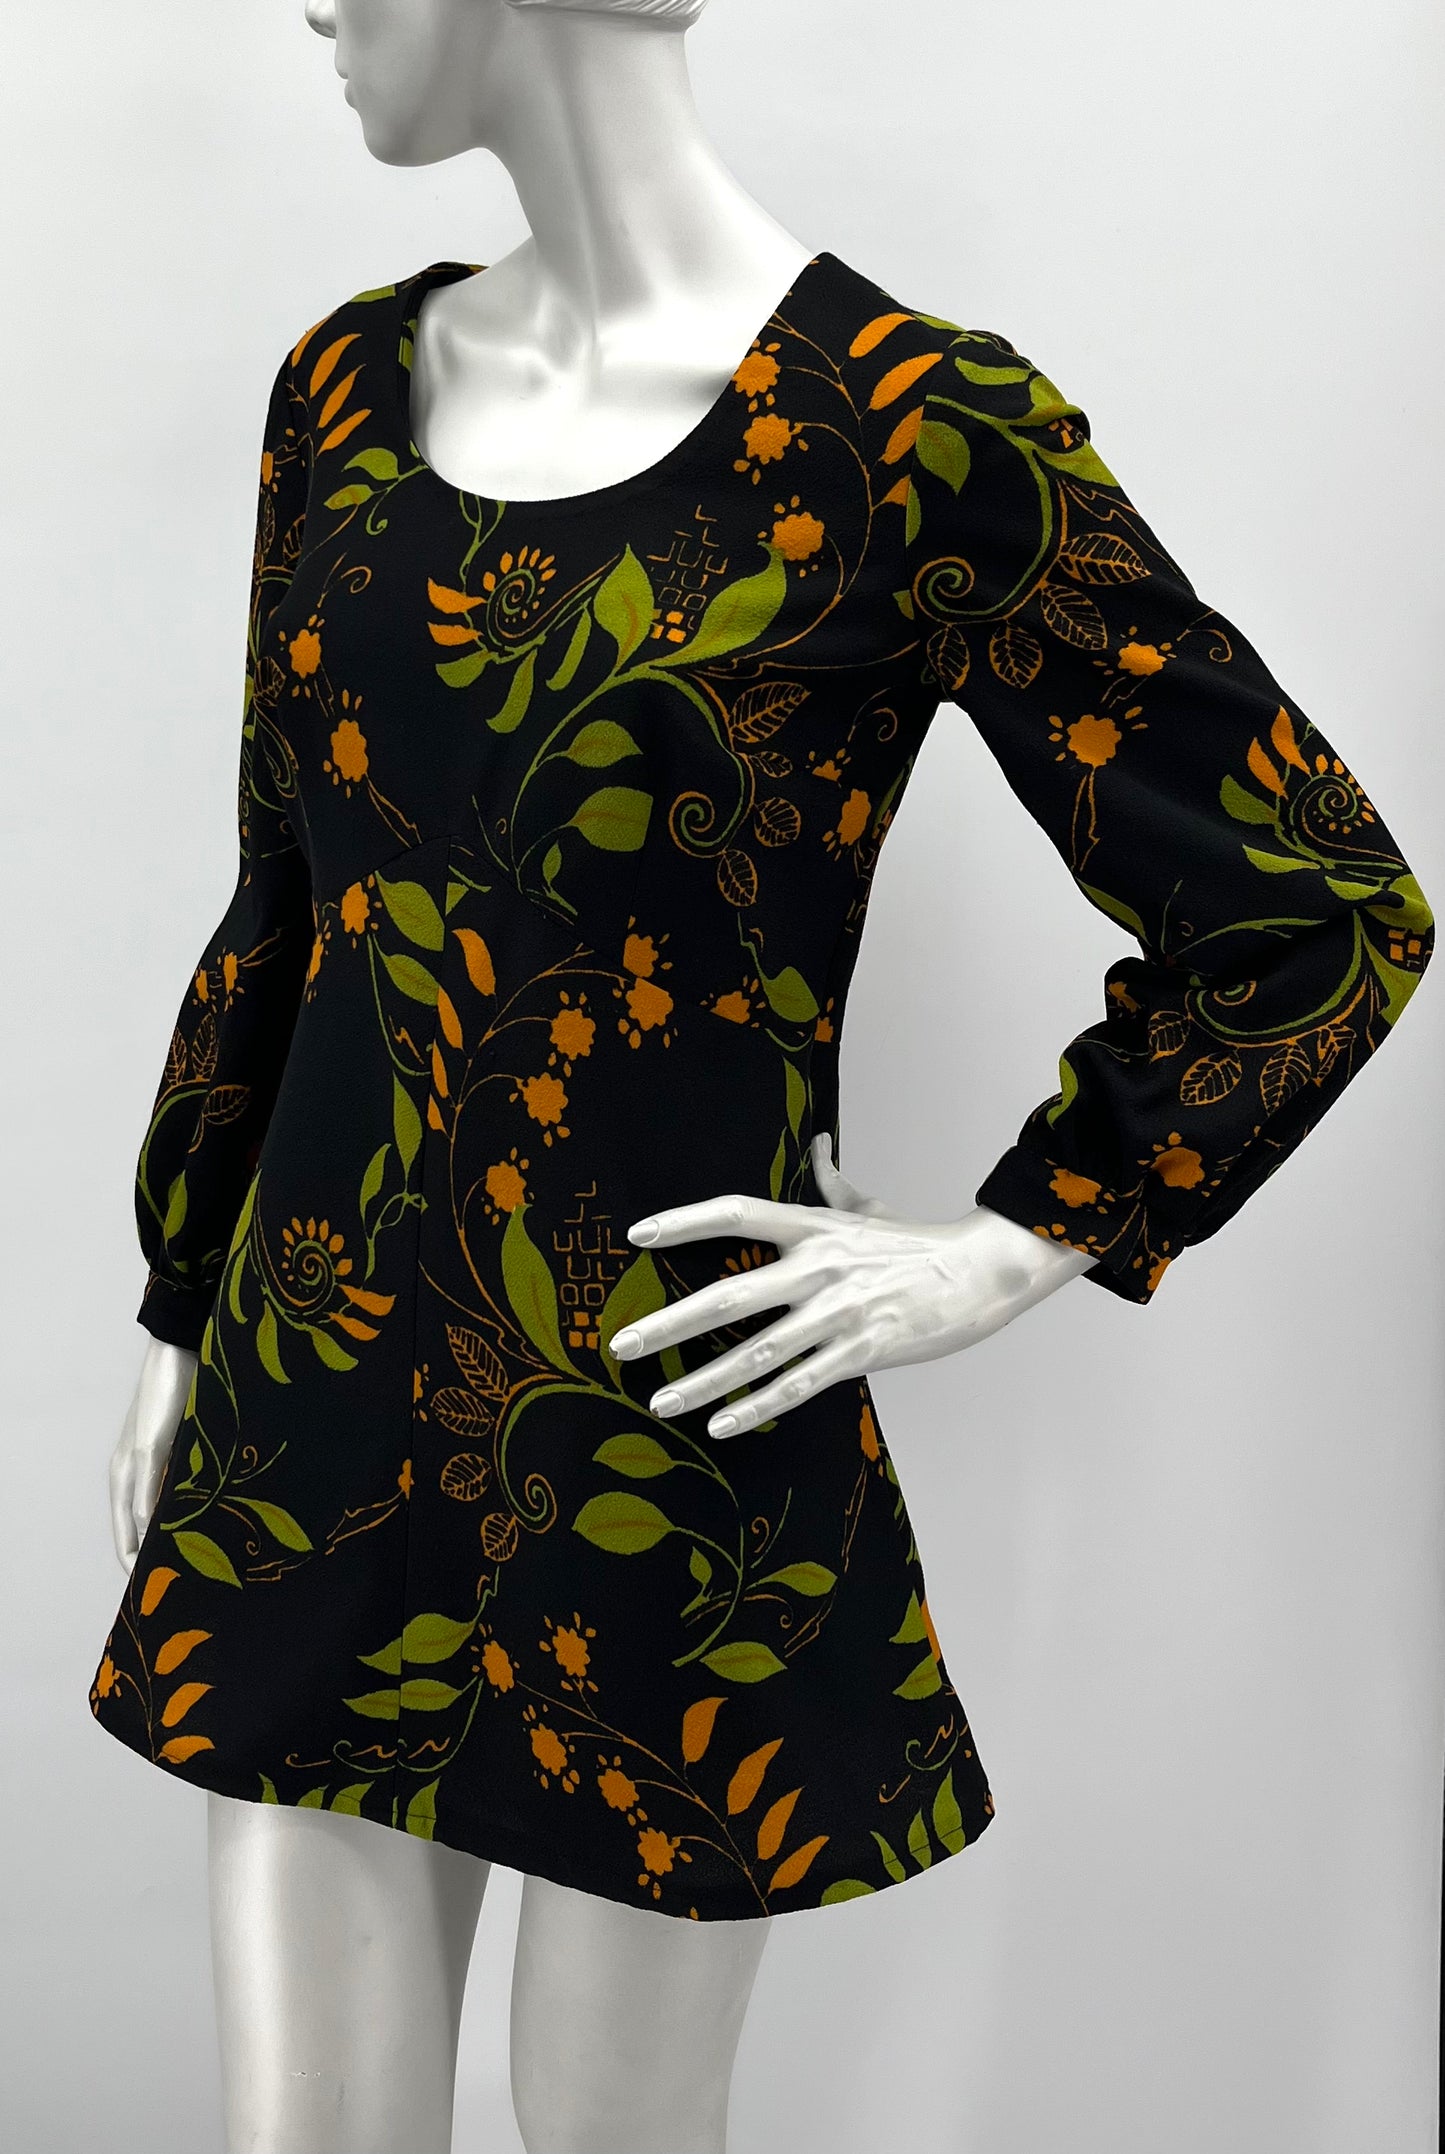 Musta lehtikuvioinen tunika-mekko, 70-80-luku, koko 38